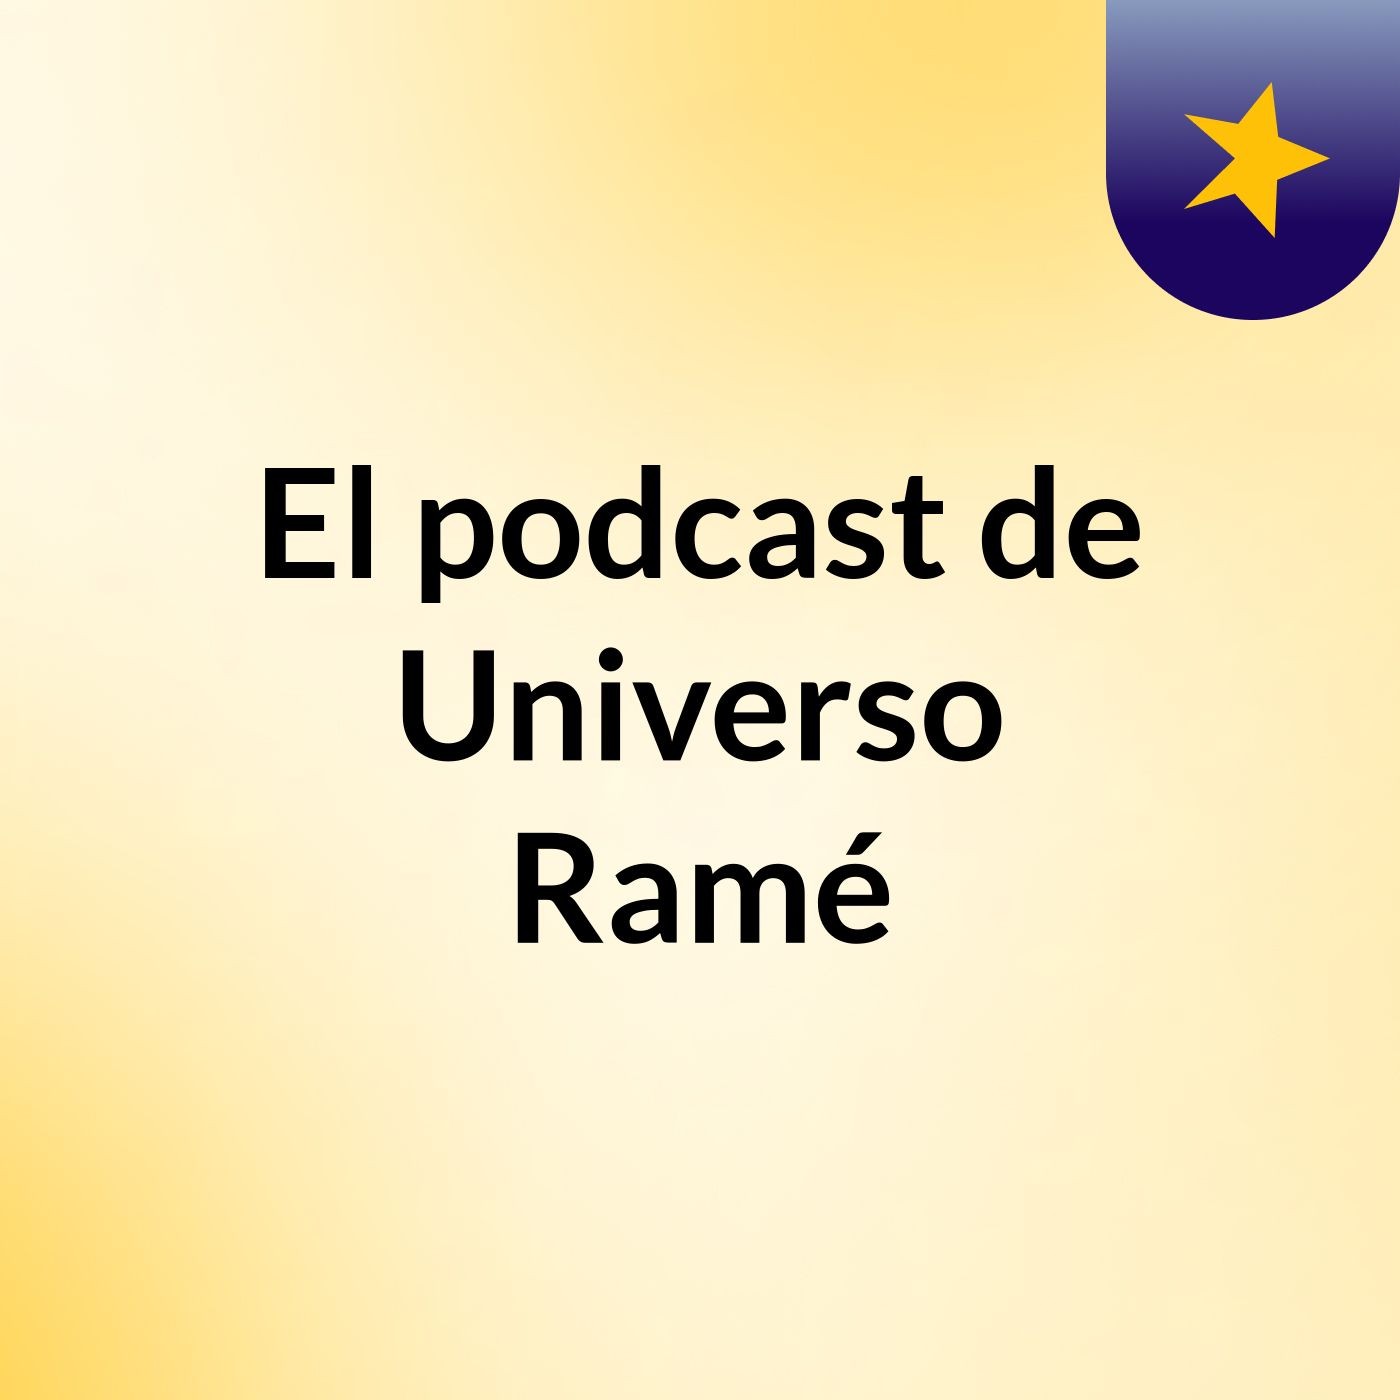 El podcast de Universo Ramé